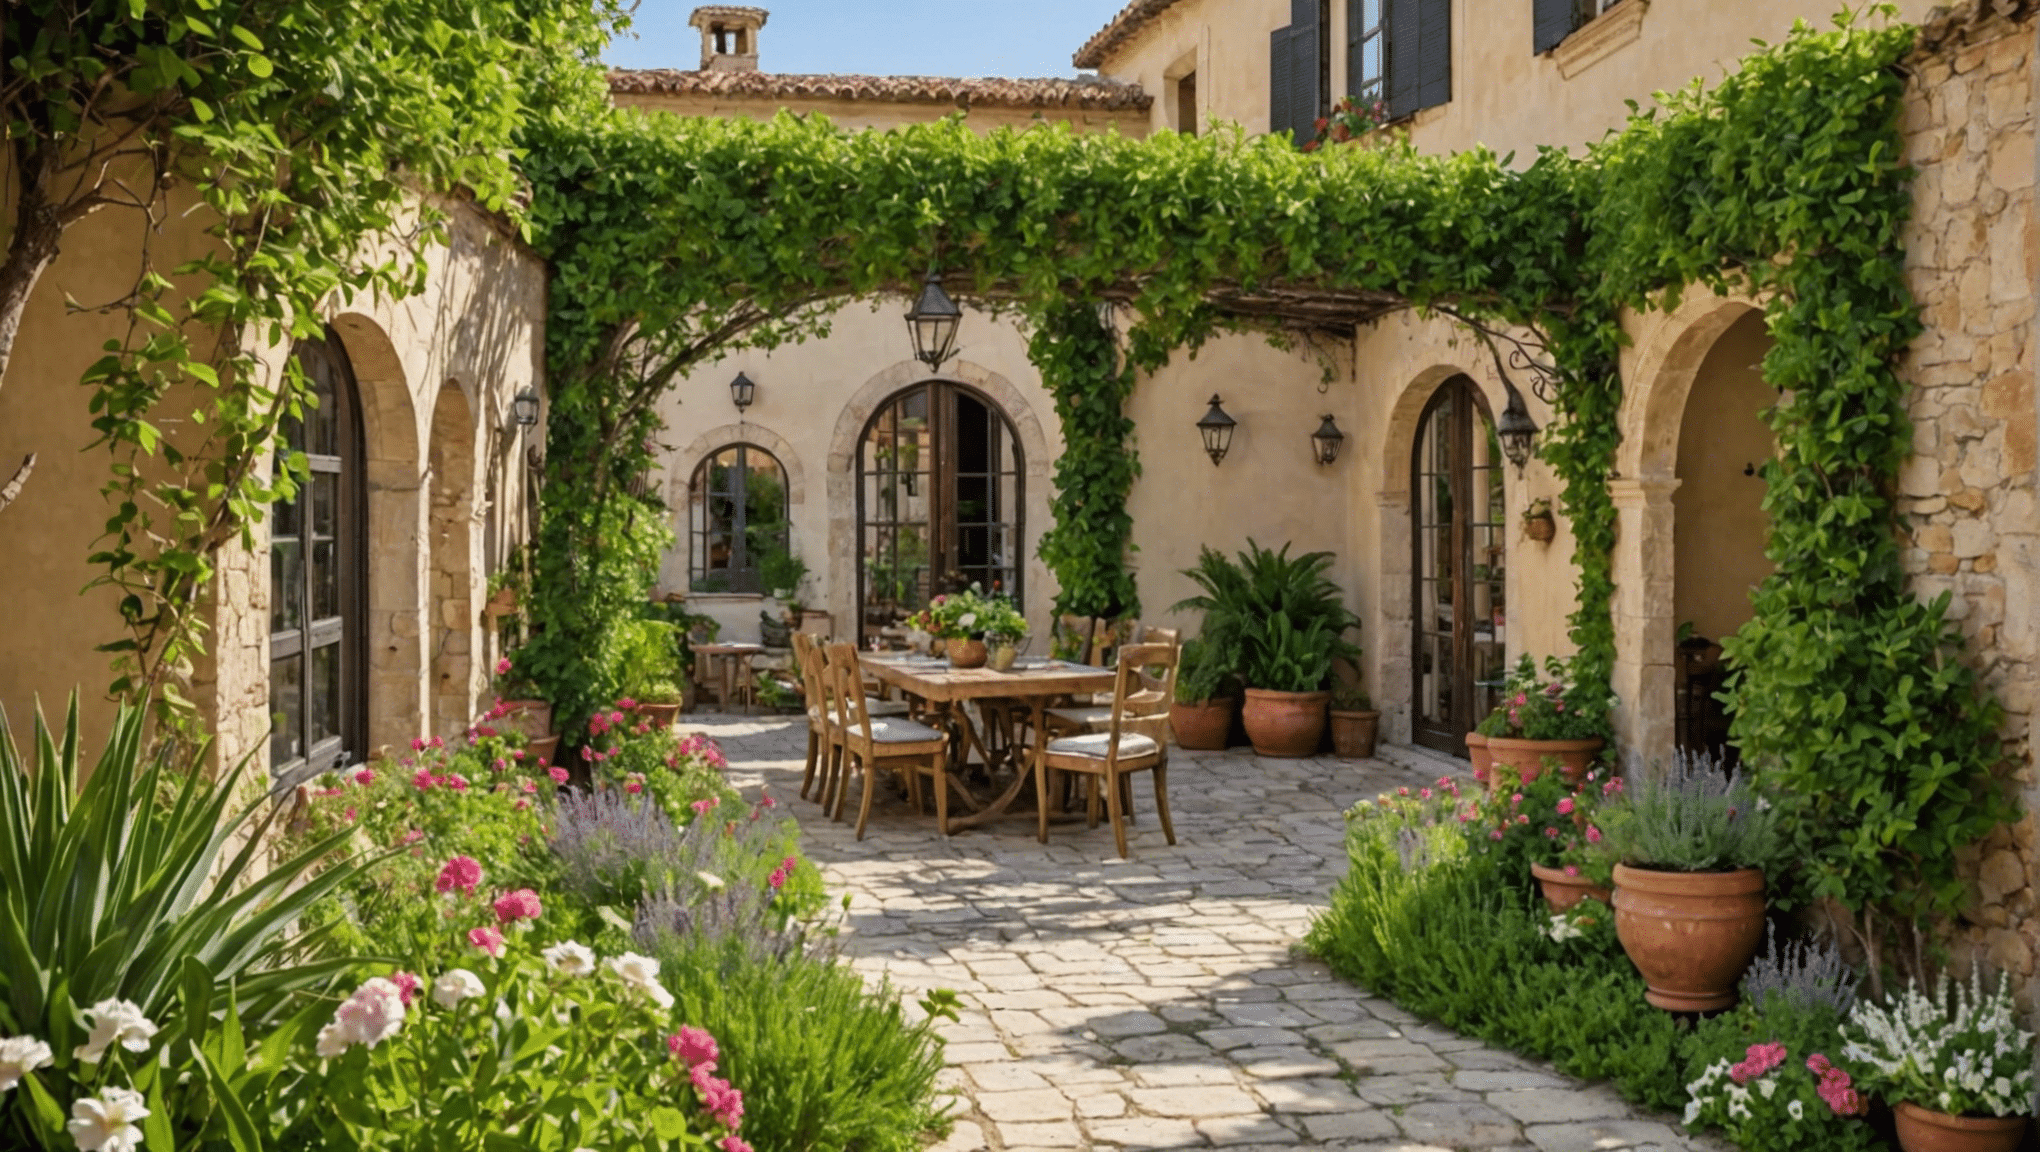 explorez des idées de jardinage méditerranéen pour transformer votre espace extérieur avec notre collection inspirante de conseils et de designs.